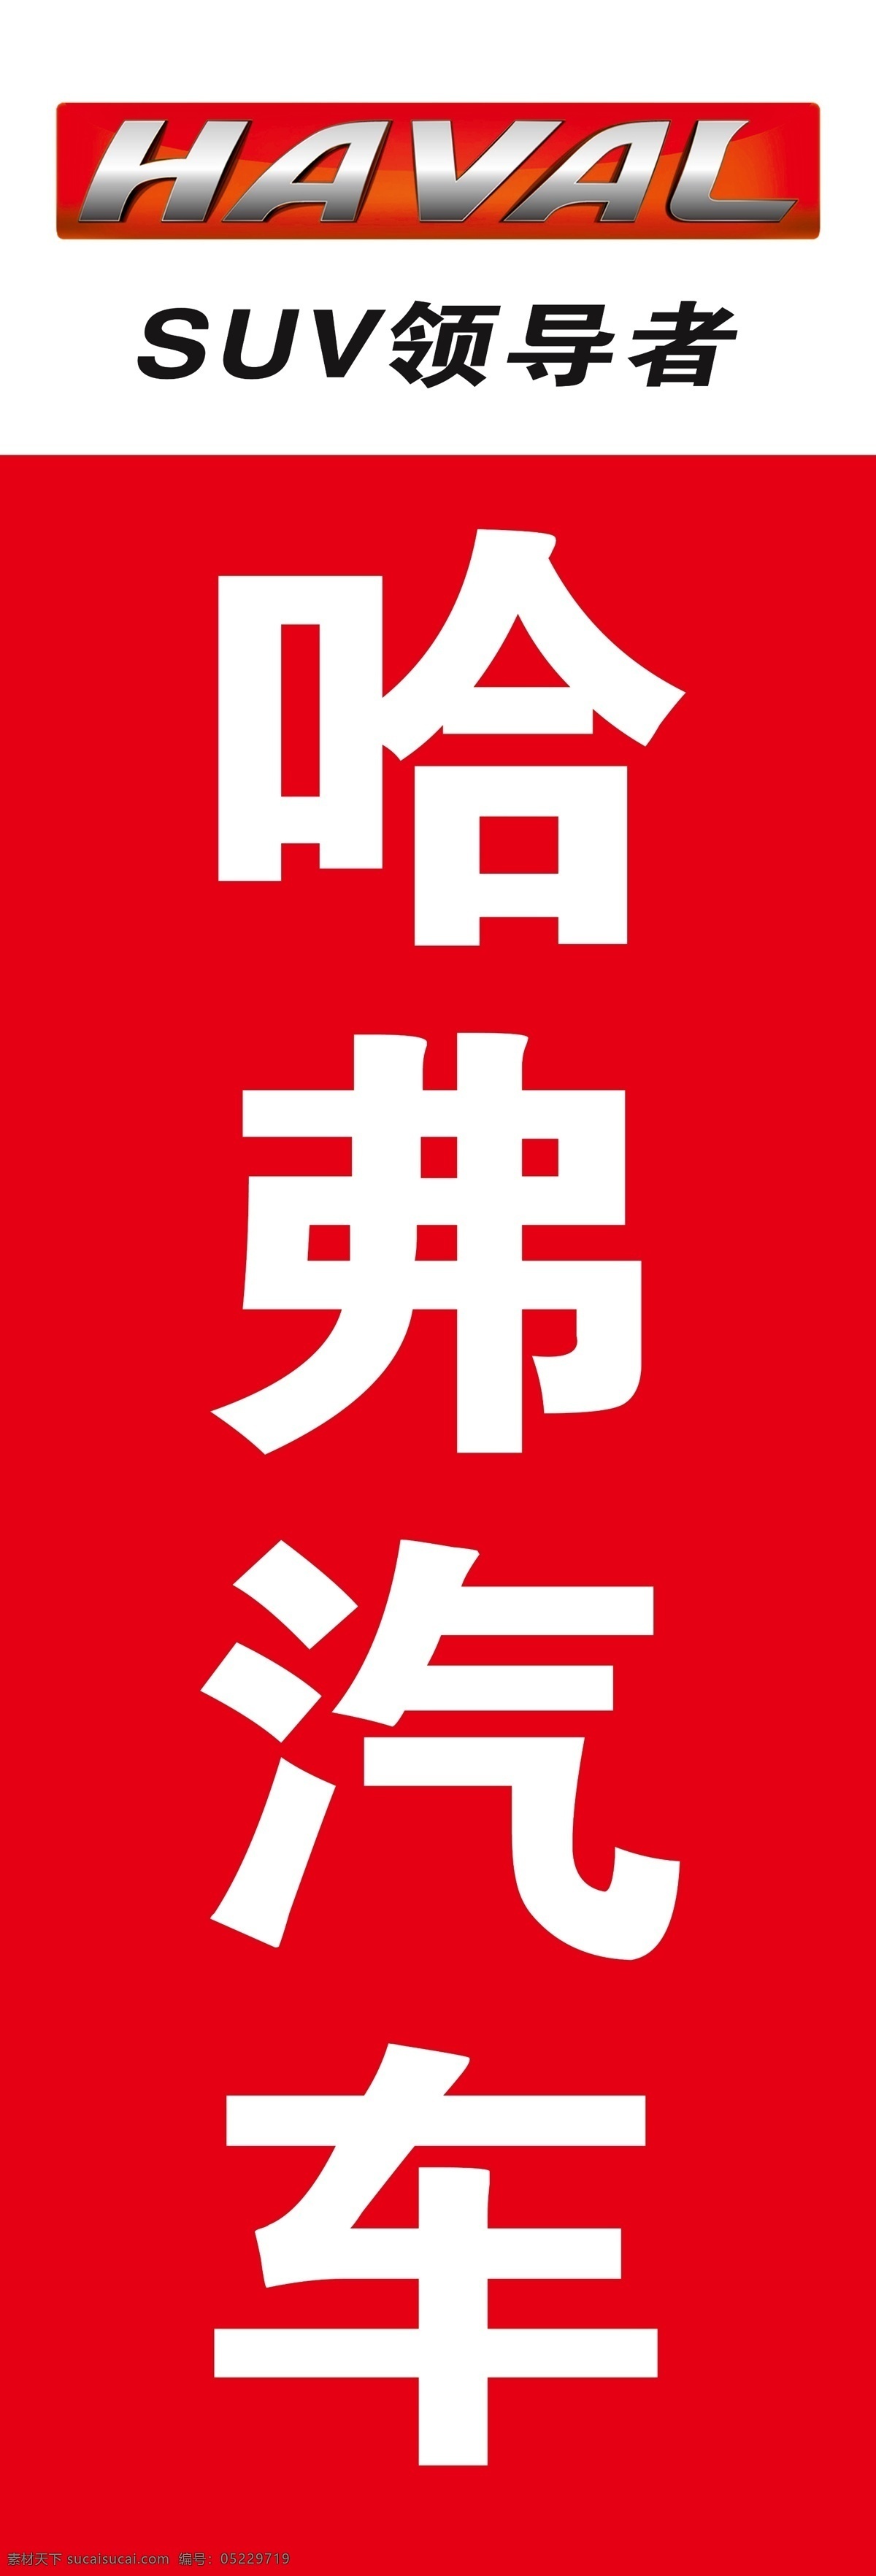 哈弗汽车 logo 标志 suv领导者 长城汽车 展板模板